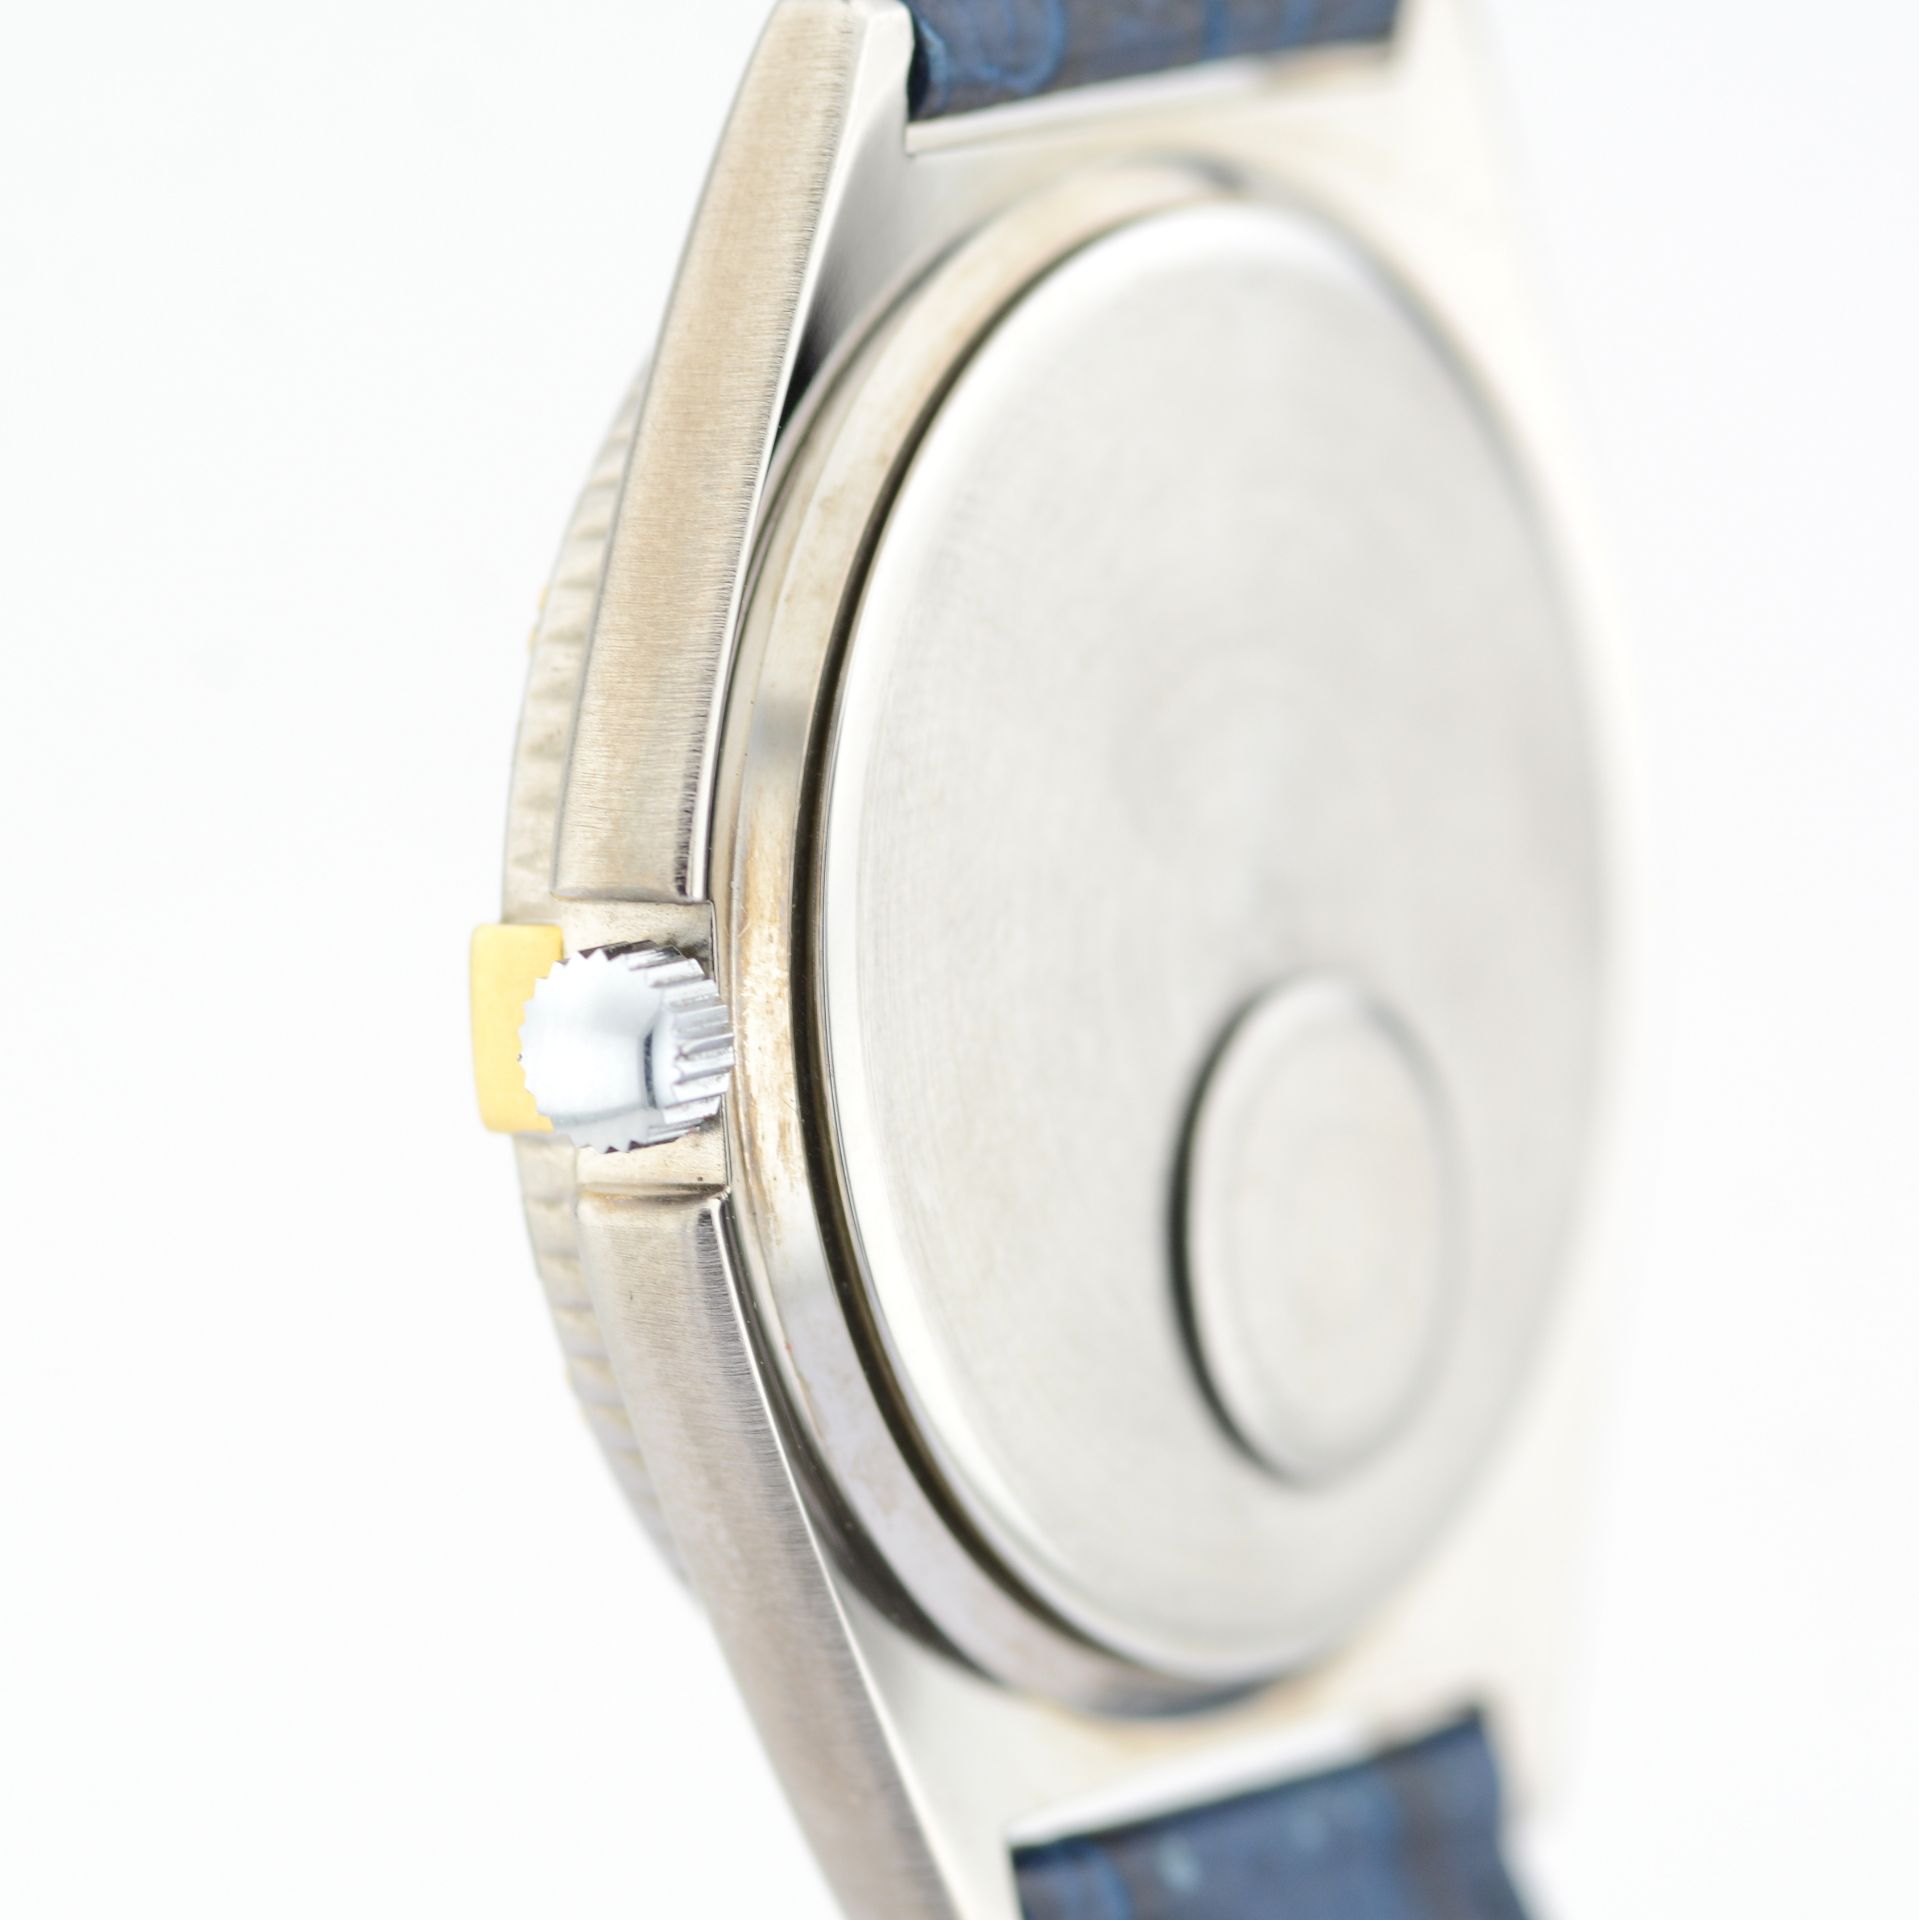 Mondaine / M-Watch Day-Date - (Unworn) Gentlmen's Brass Wrist Watch - Image 6 of 8